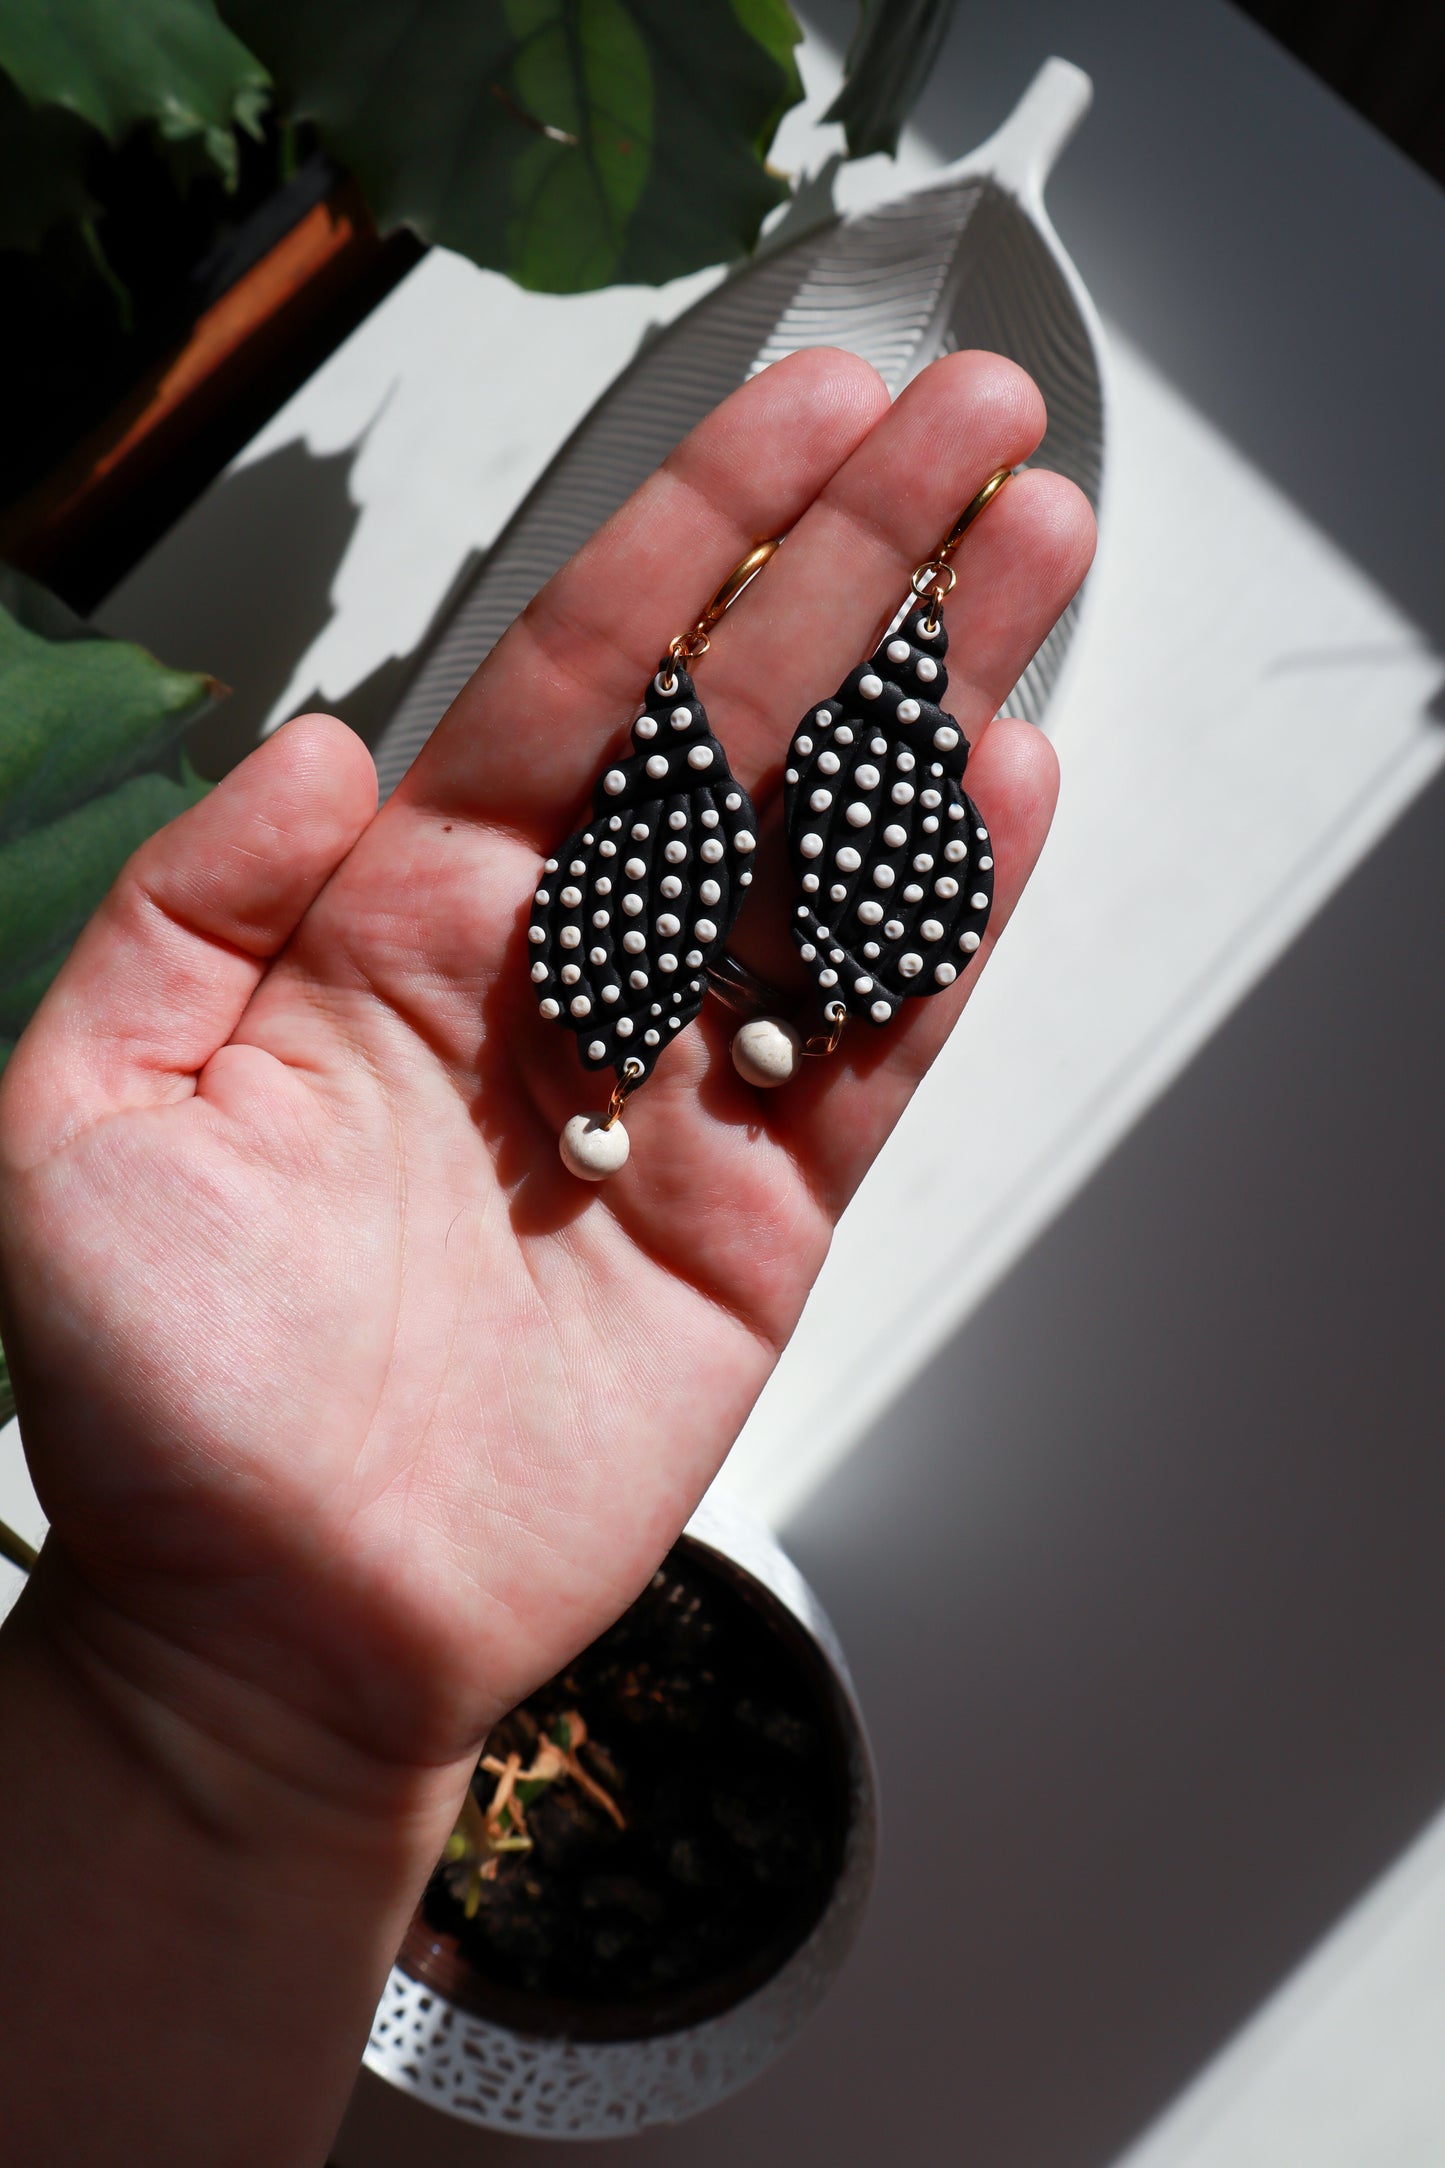 Crne školjke s točkicama i bračkim kamenom - polimerne naušnice